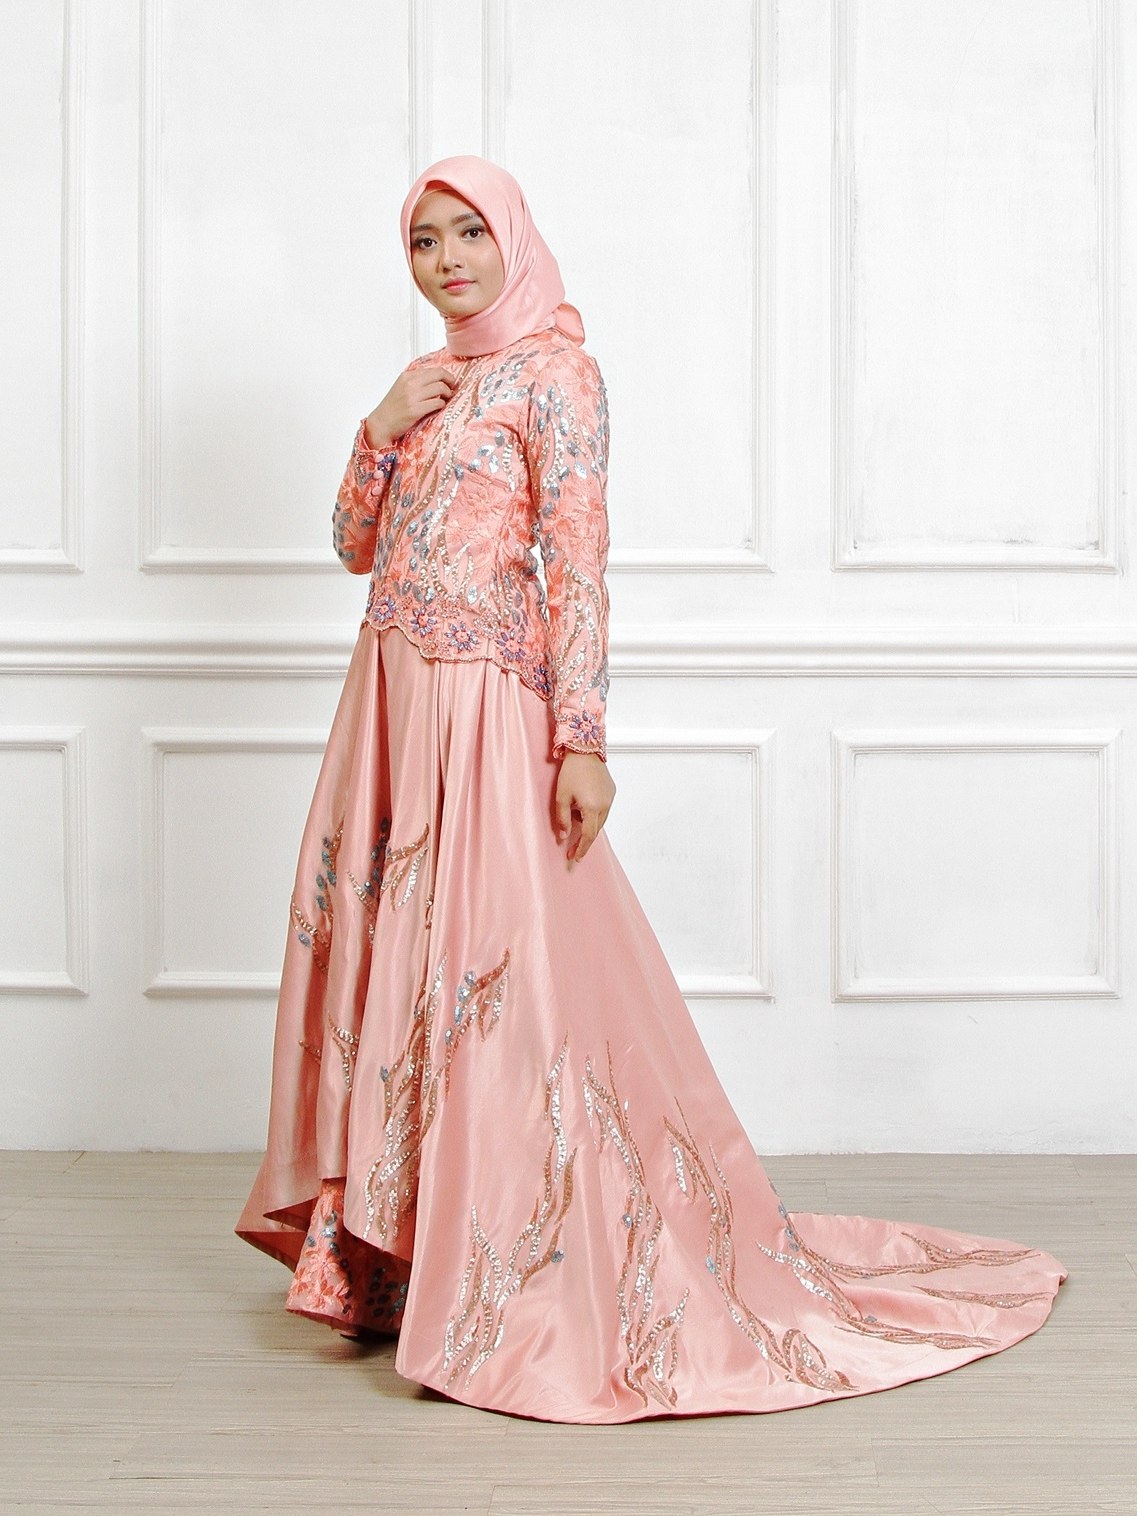 Bentuk Sewa Gaun Pengantin Muslimah Jogja 0gdr Sewa Perdana Baju Pengantin Muslimah Jogja Gaun Pengantin